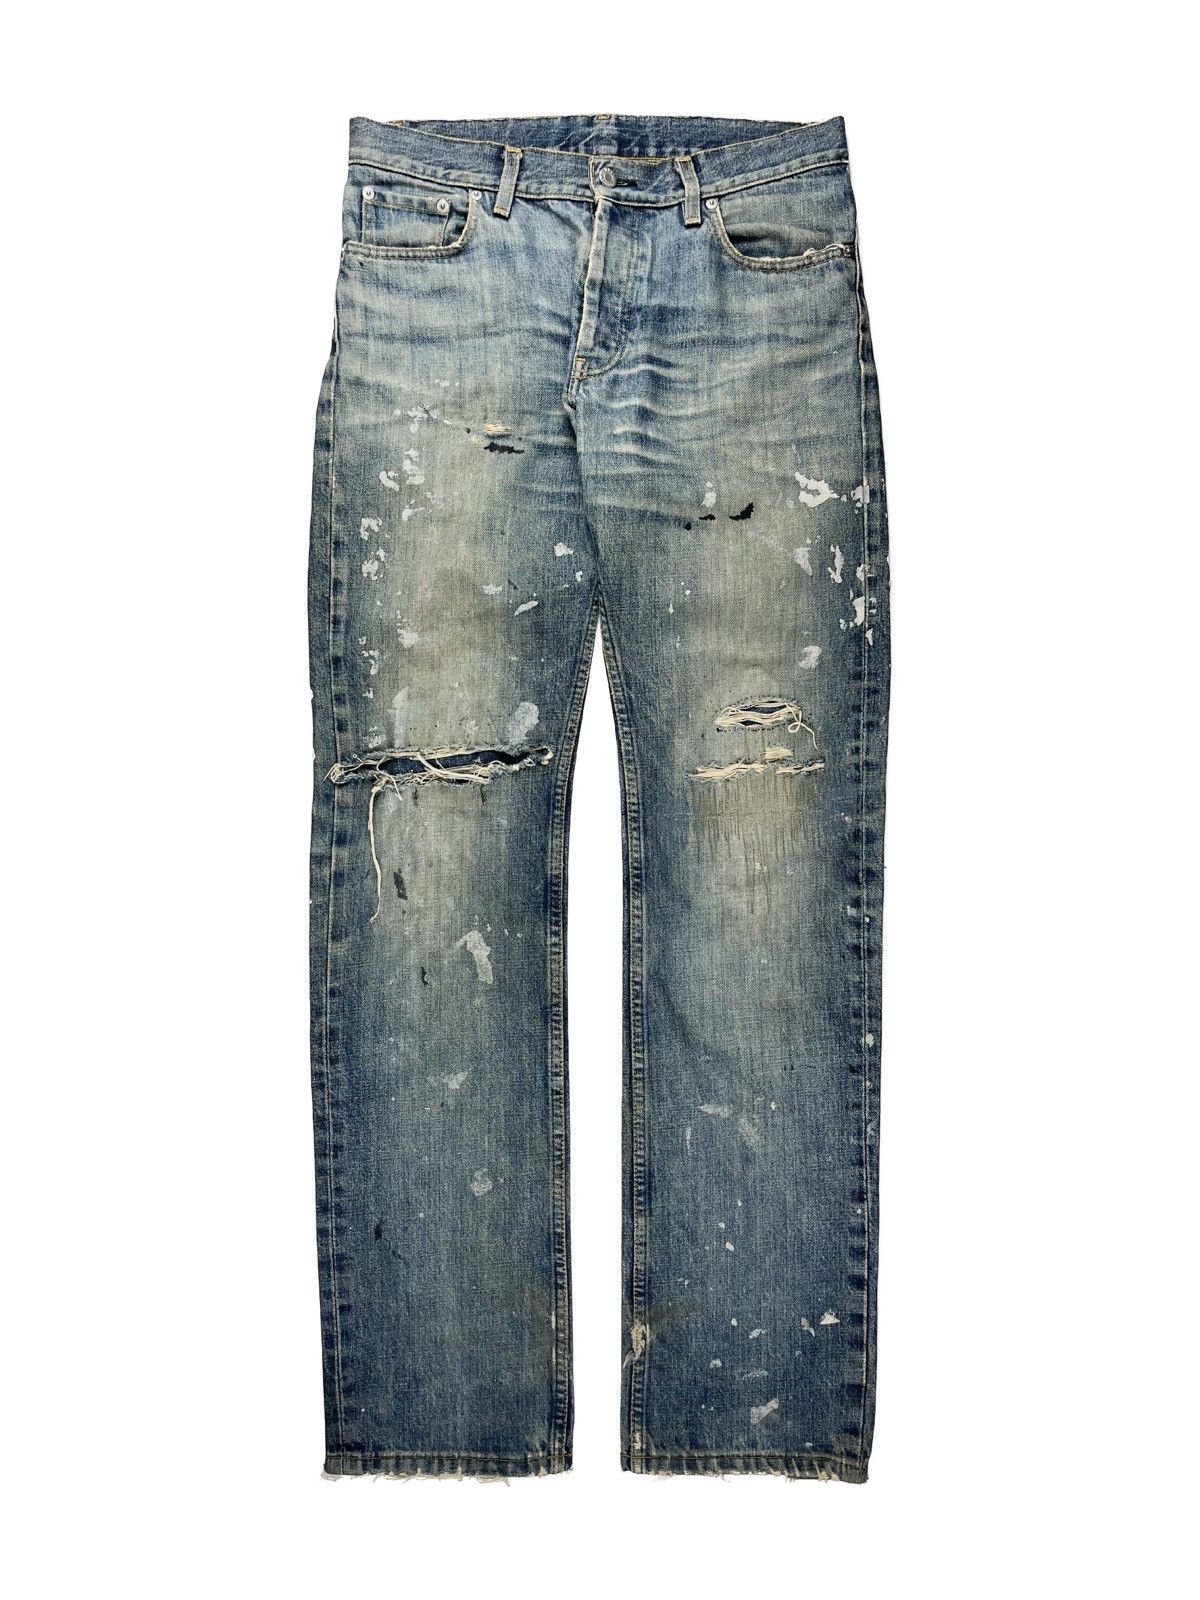 Vintage 1998 Helmut Lang Thrashed Painter Denim Jeans Classic Cut | Grailed